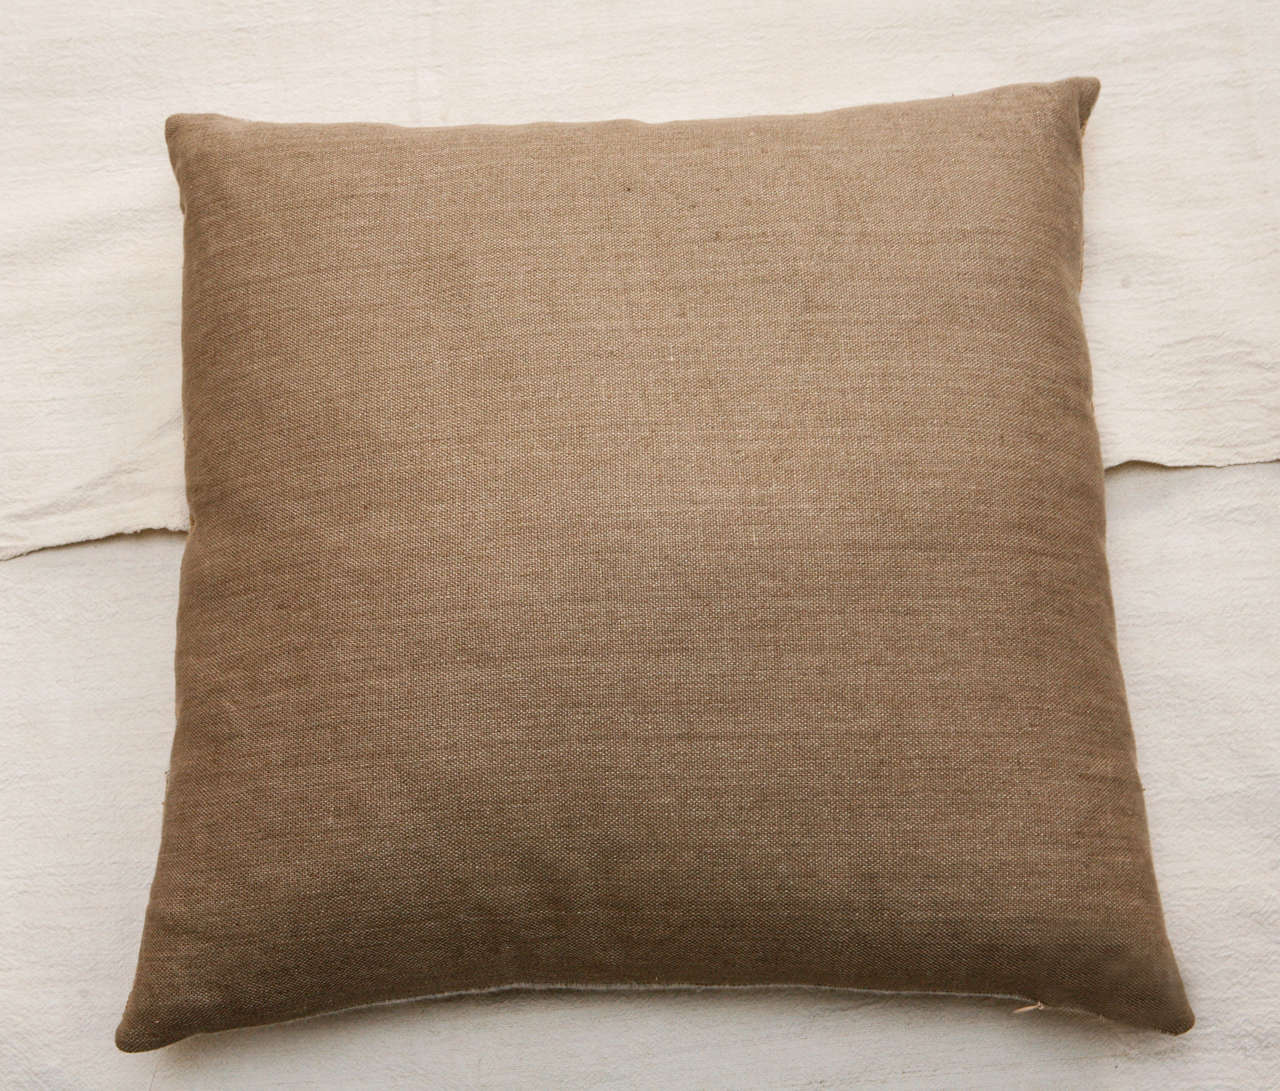 Indian Raw Tusser Silk & Linen Pillows. 1